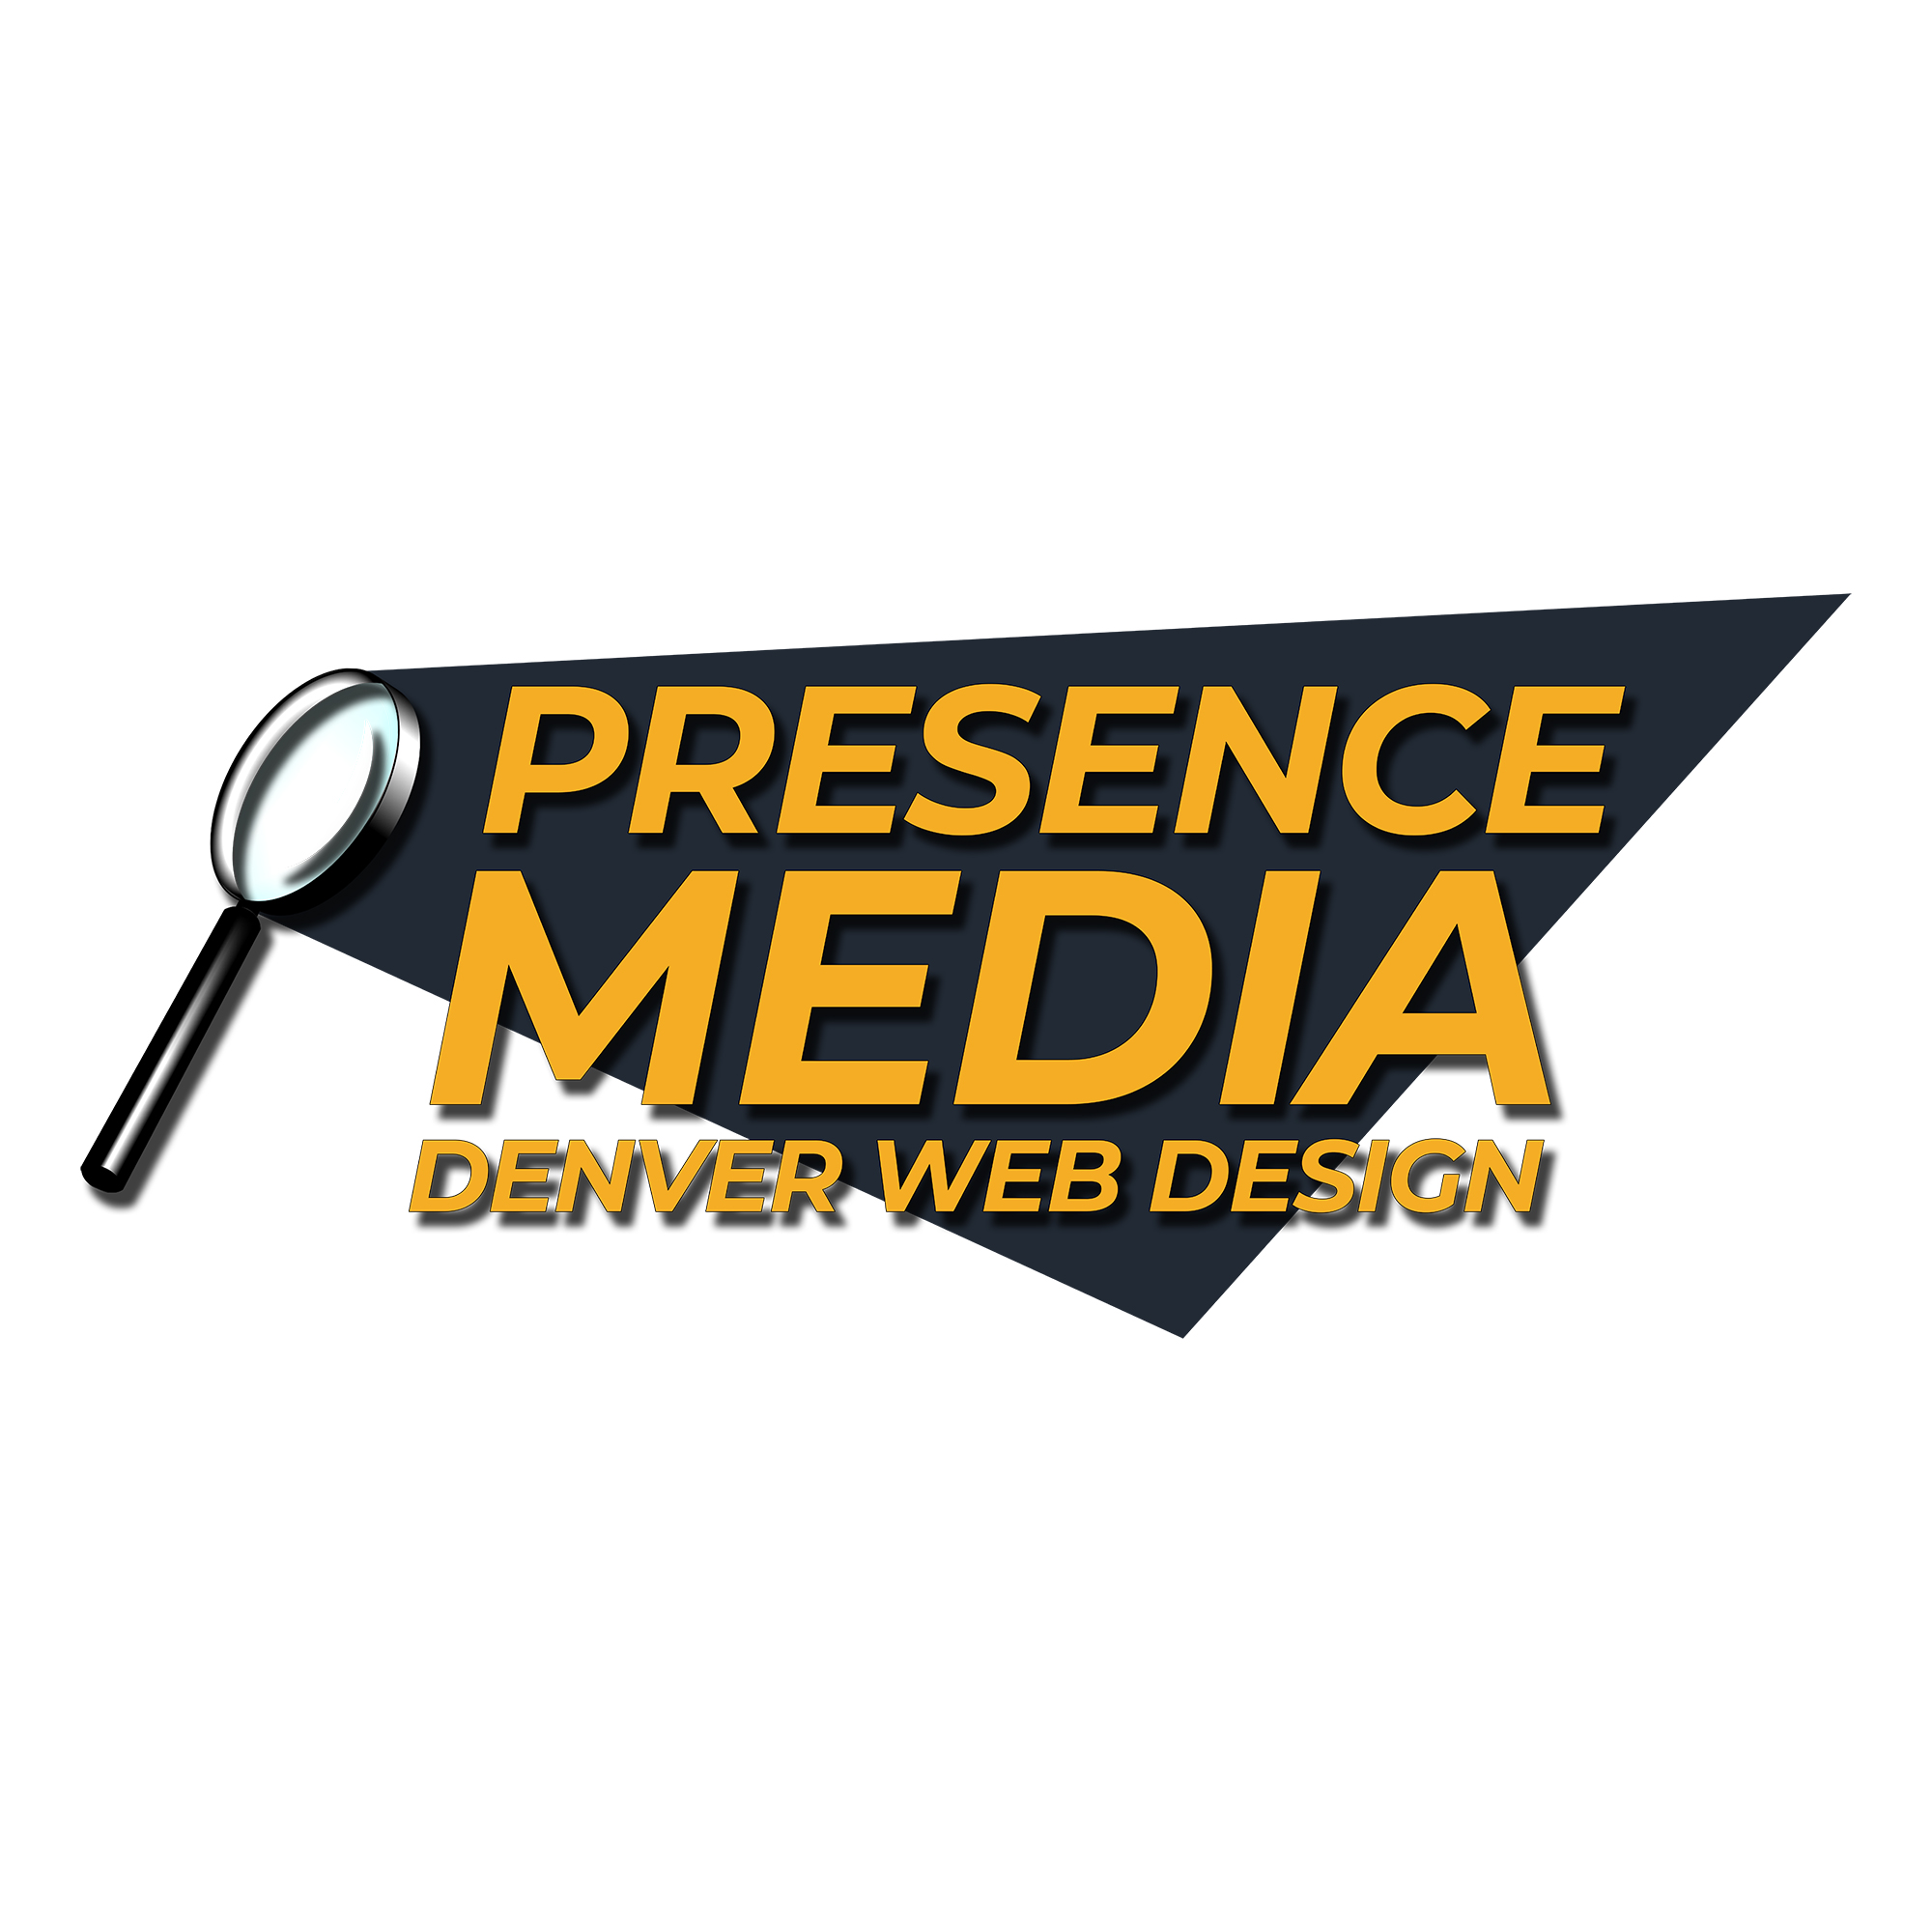 Presence Media Denver Web Design's Logo